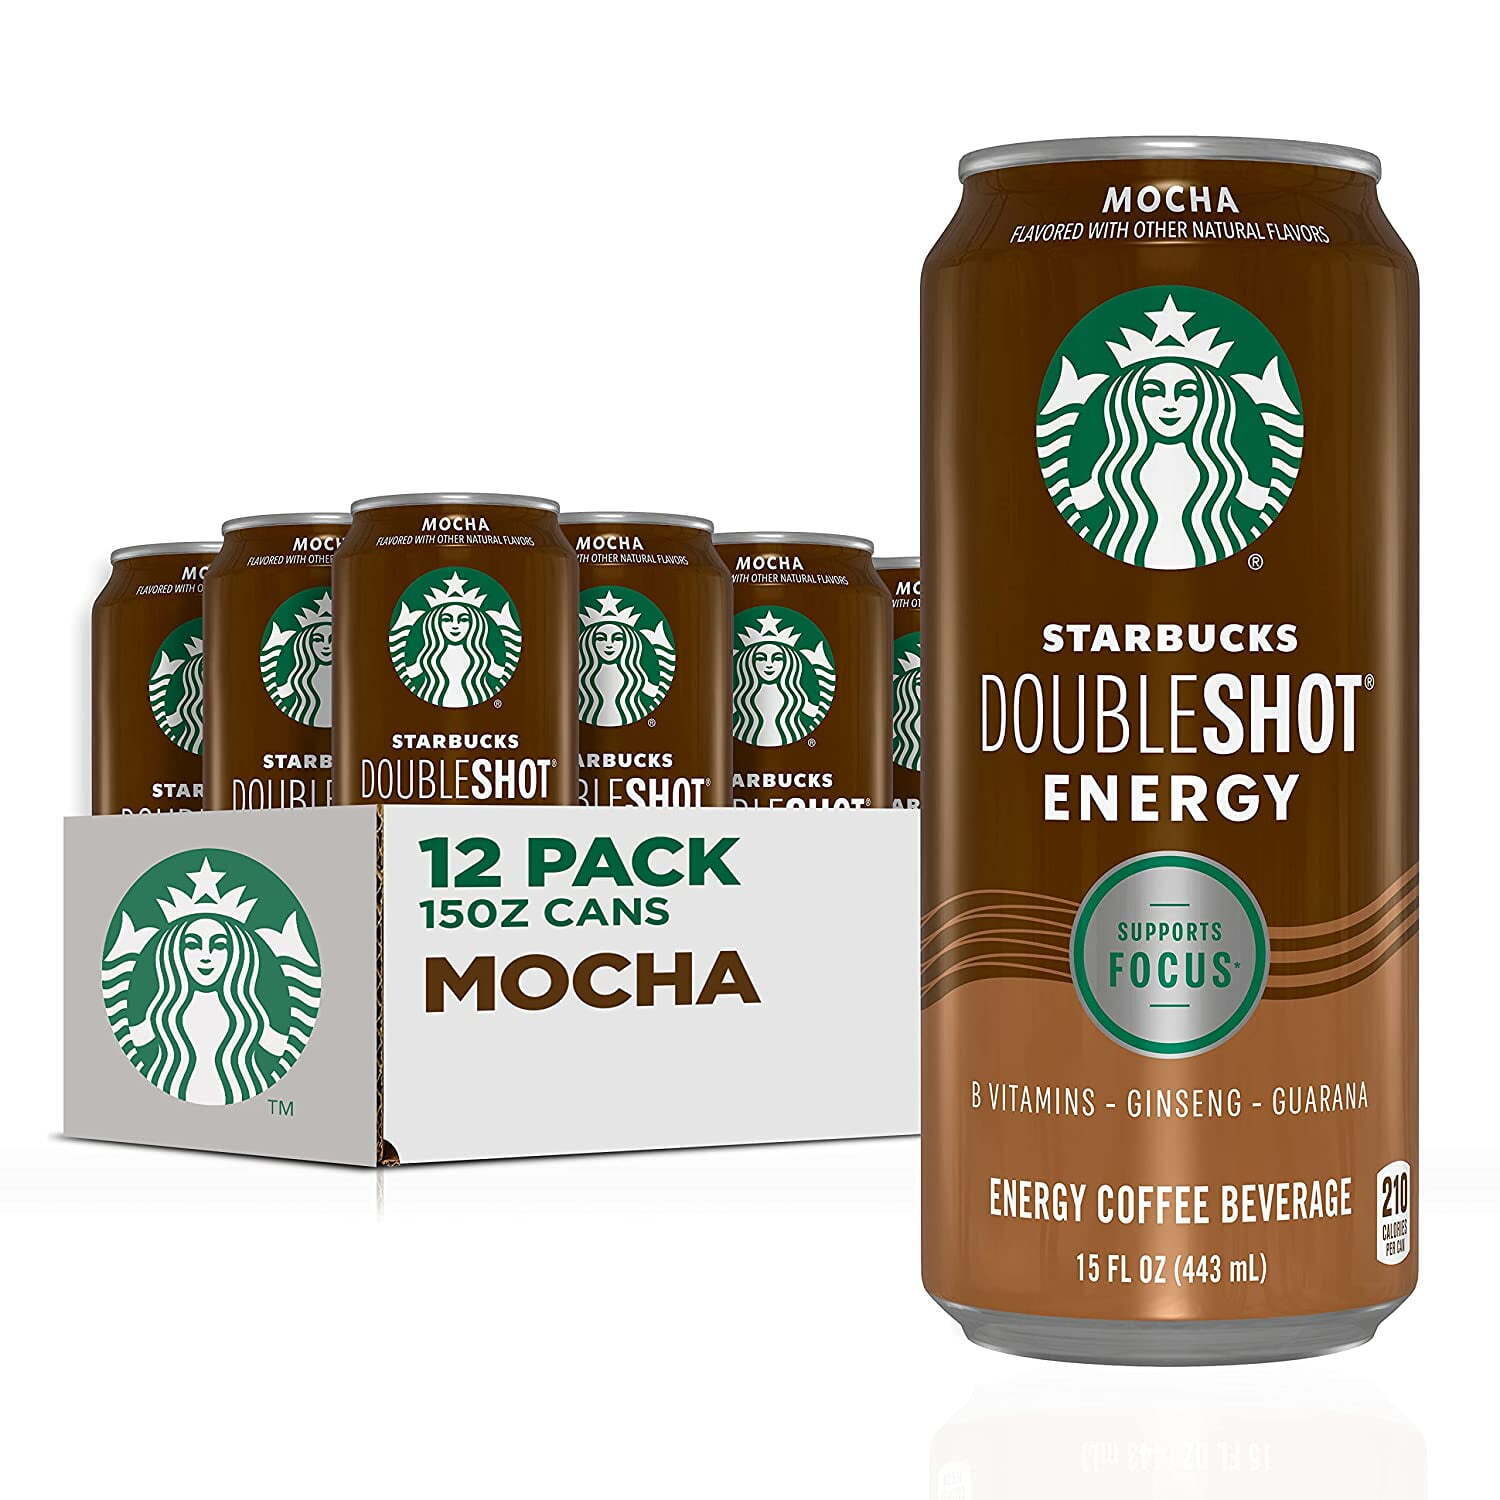 Starbucks Doubleshot Energy Mocha Coffee Energy Drink, 15 oz, 12 Count Cans